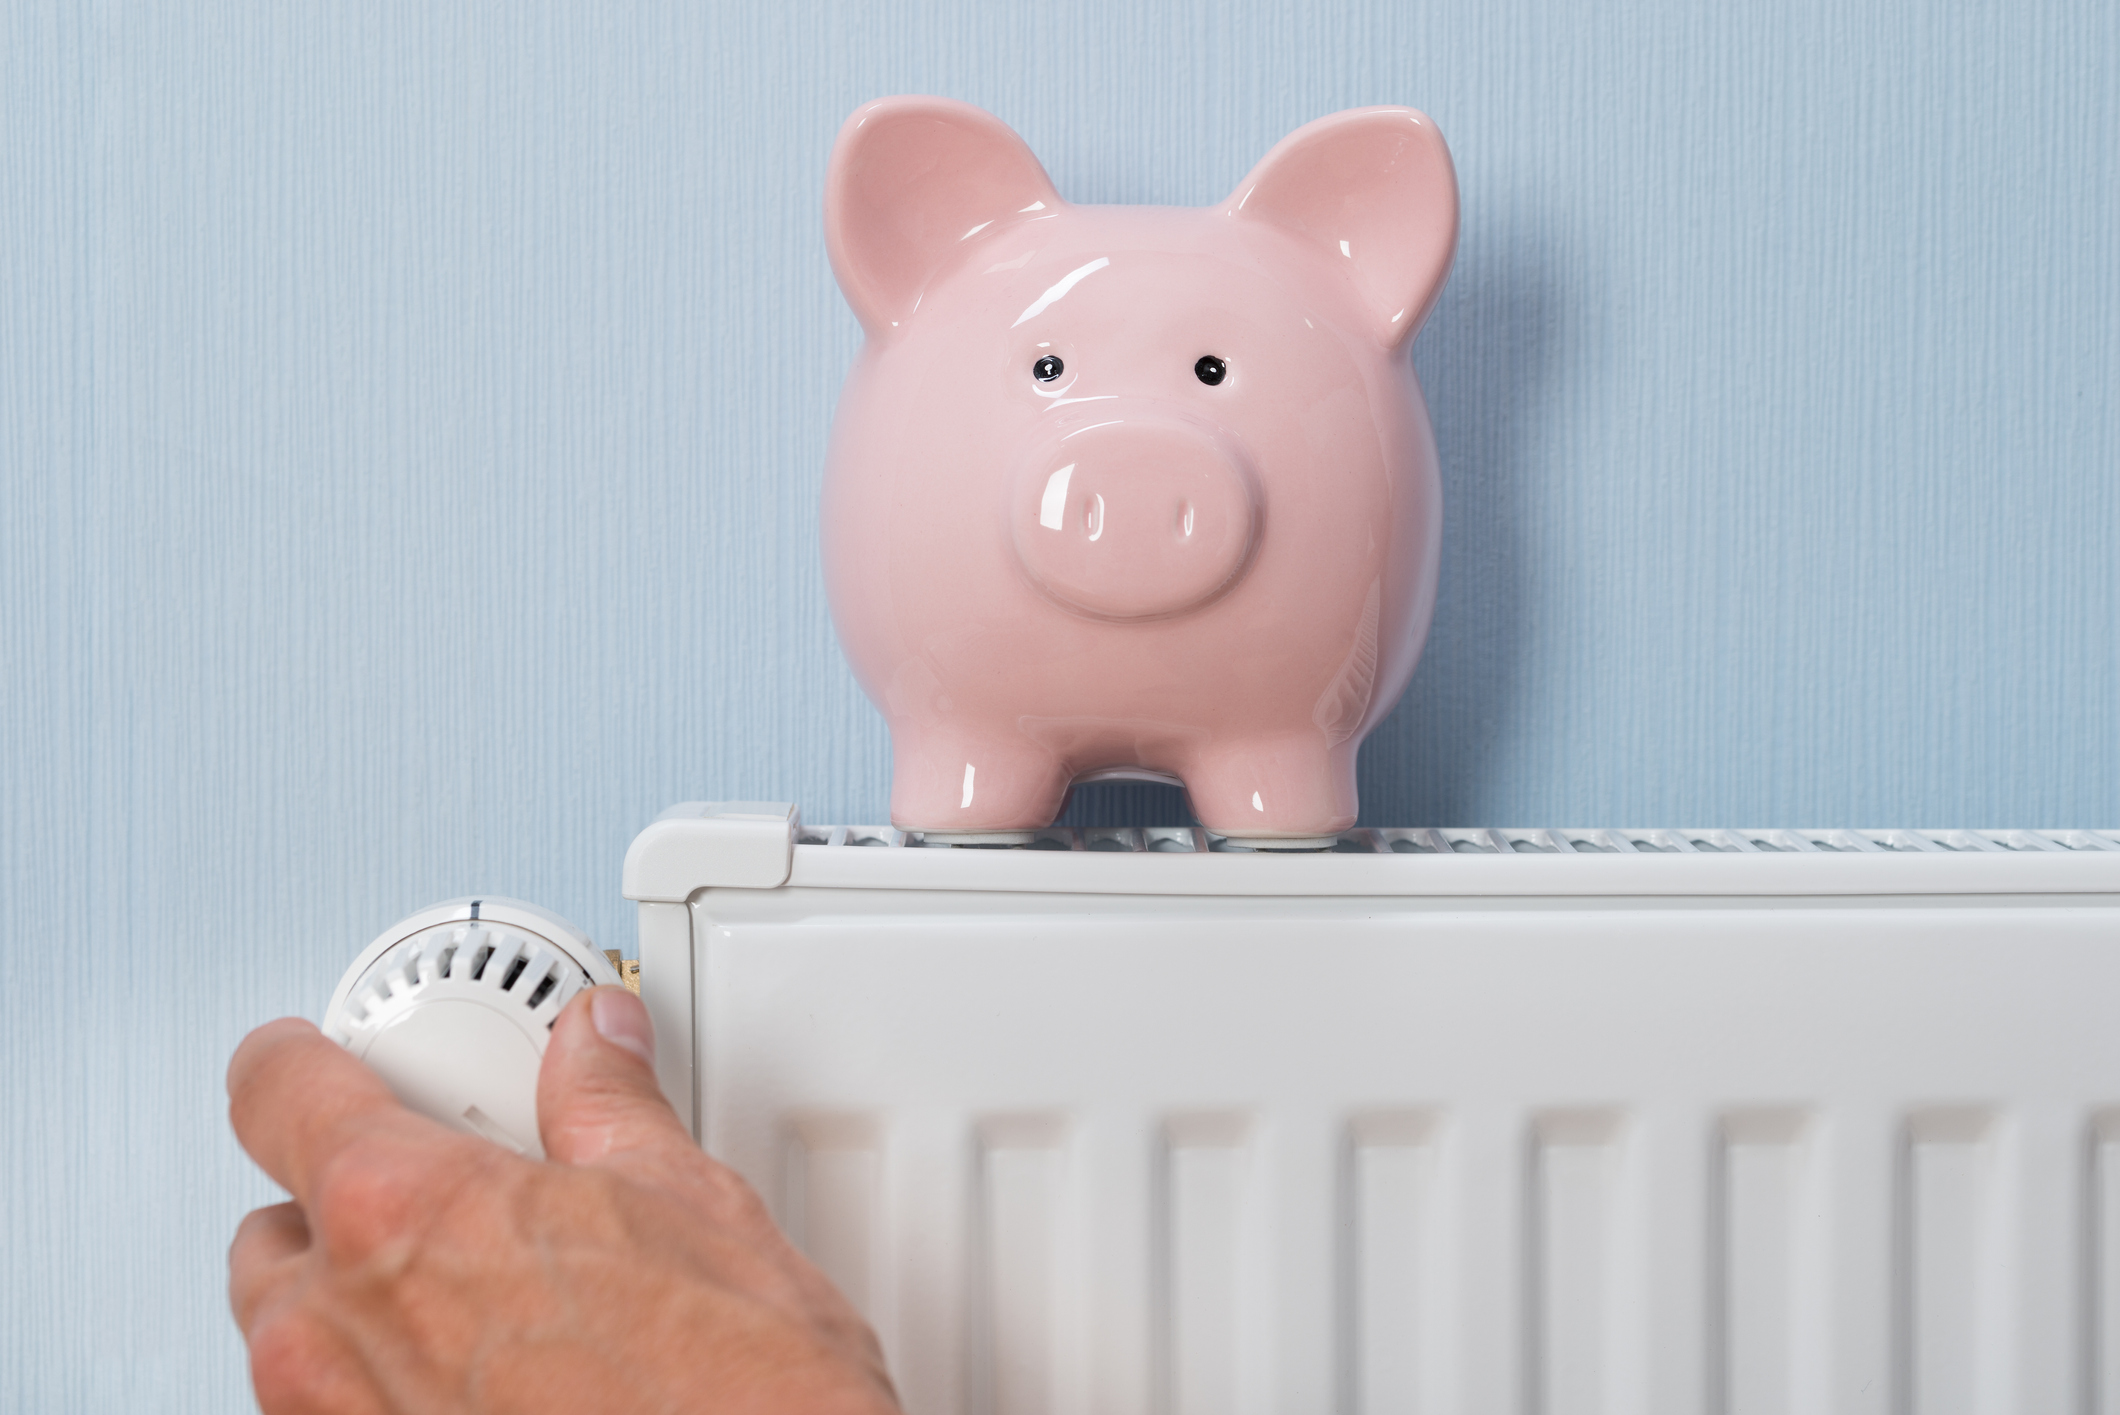 Cuánto dinero cuesta tener un radiador eléctrico encendido todo el día?